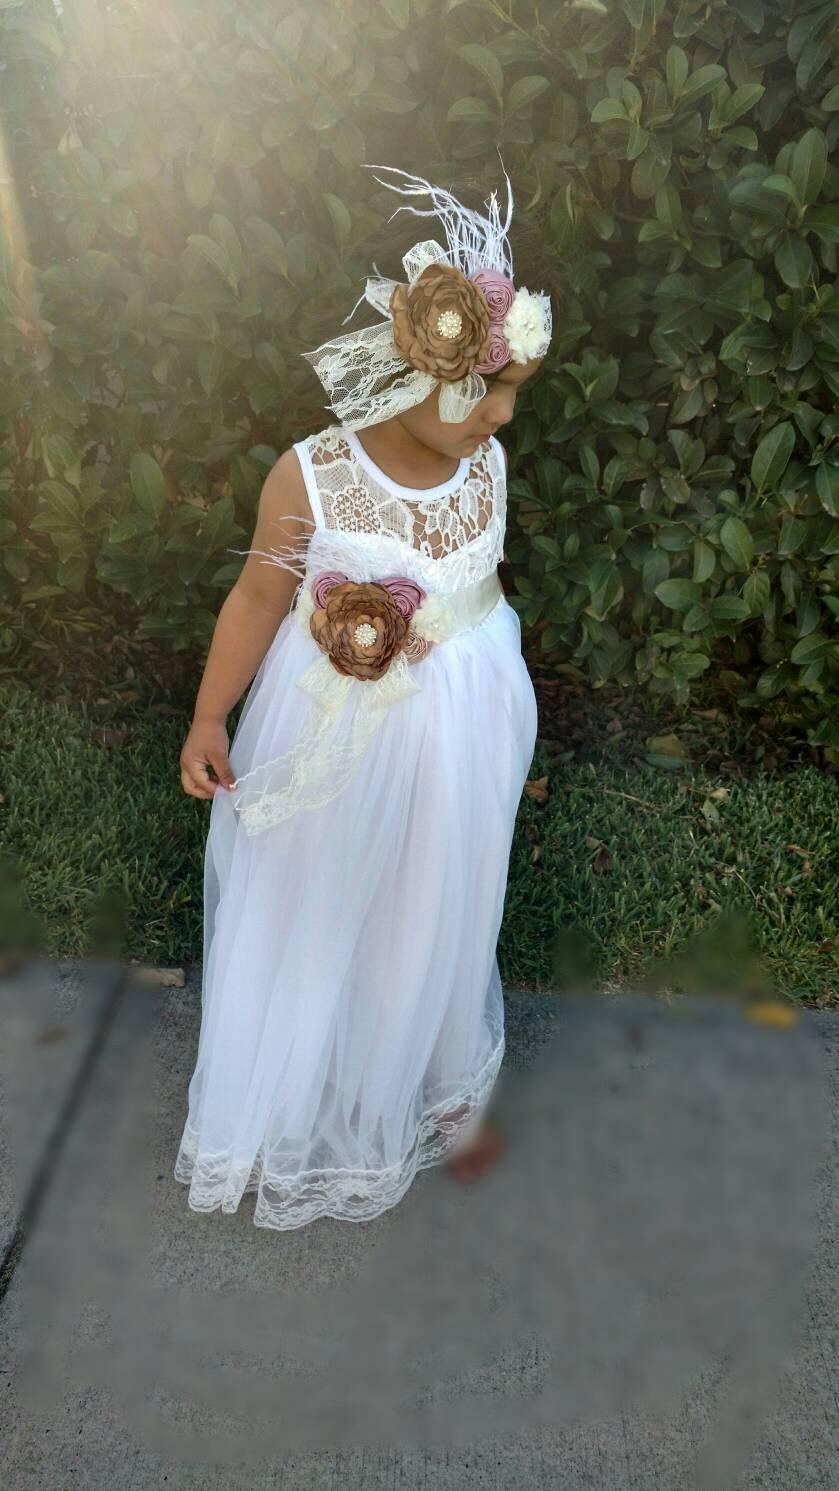 زفاف - Perfect White Tulle with Ivory Lace Flowergirl Dress for Wedding Christening Baptism  Birthday Party or any Special Occasions.